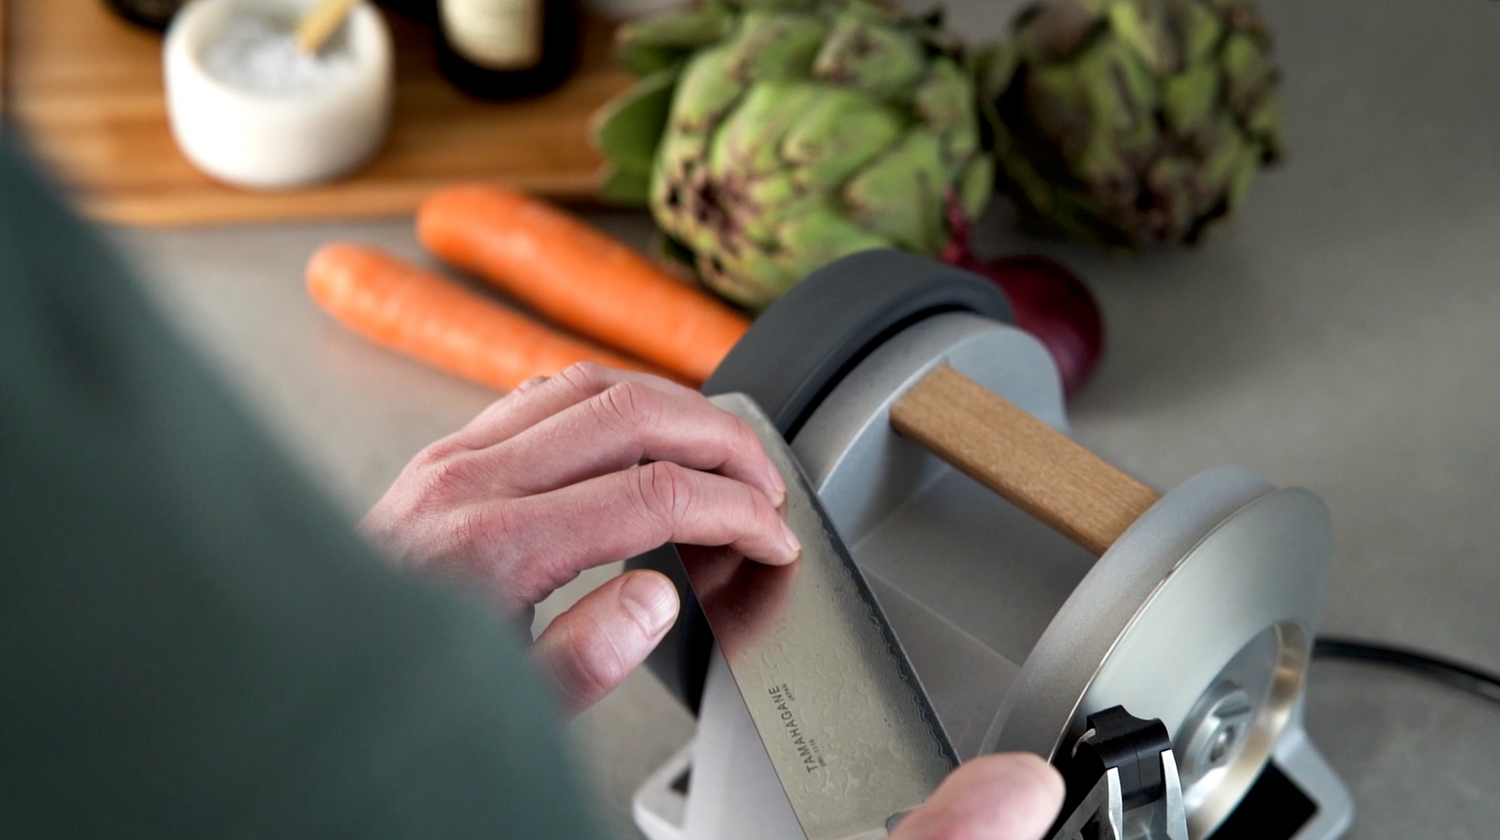 Die erste richtige Messerschleifmaschine für den Hobbykoch